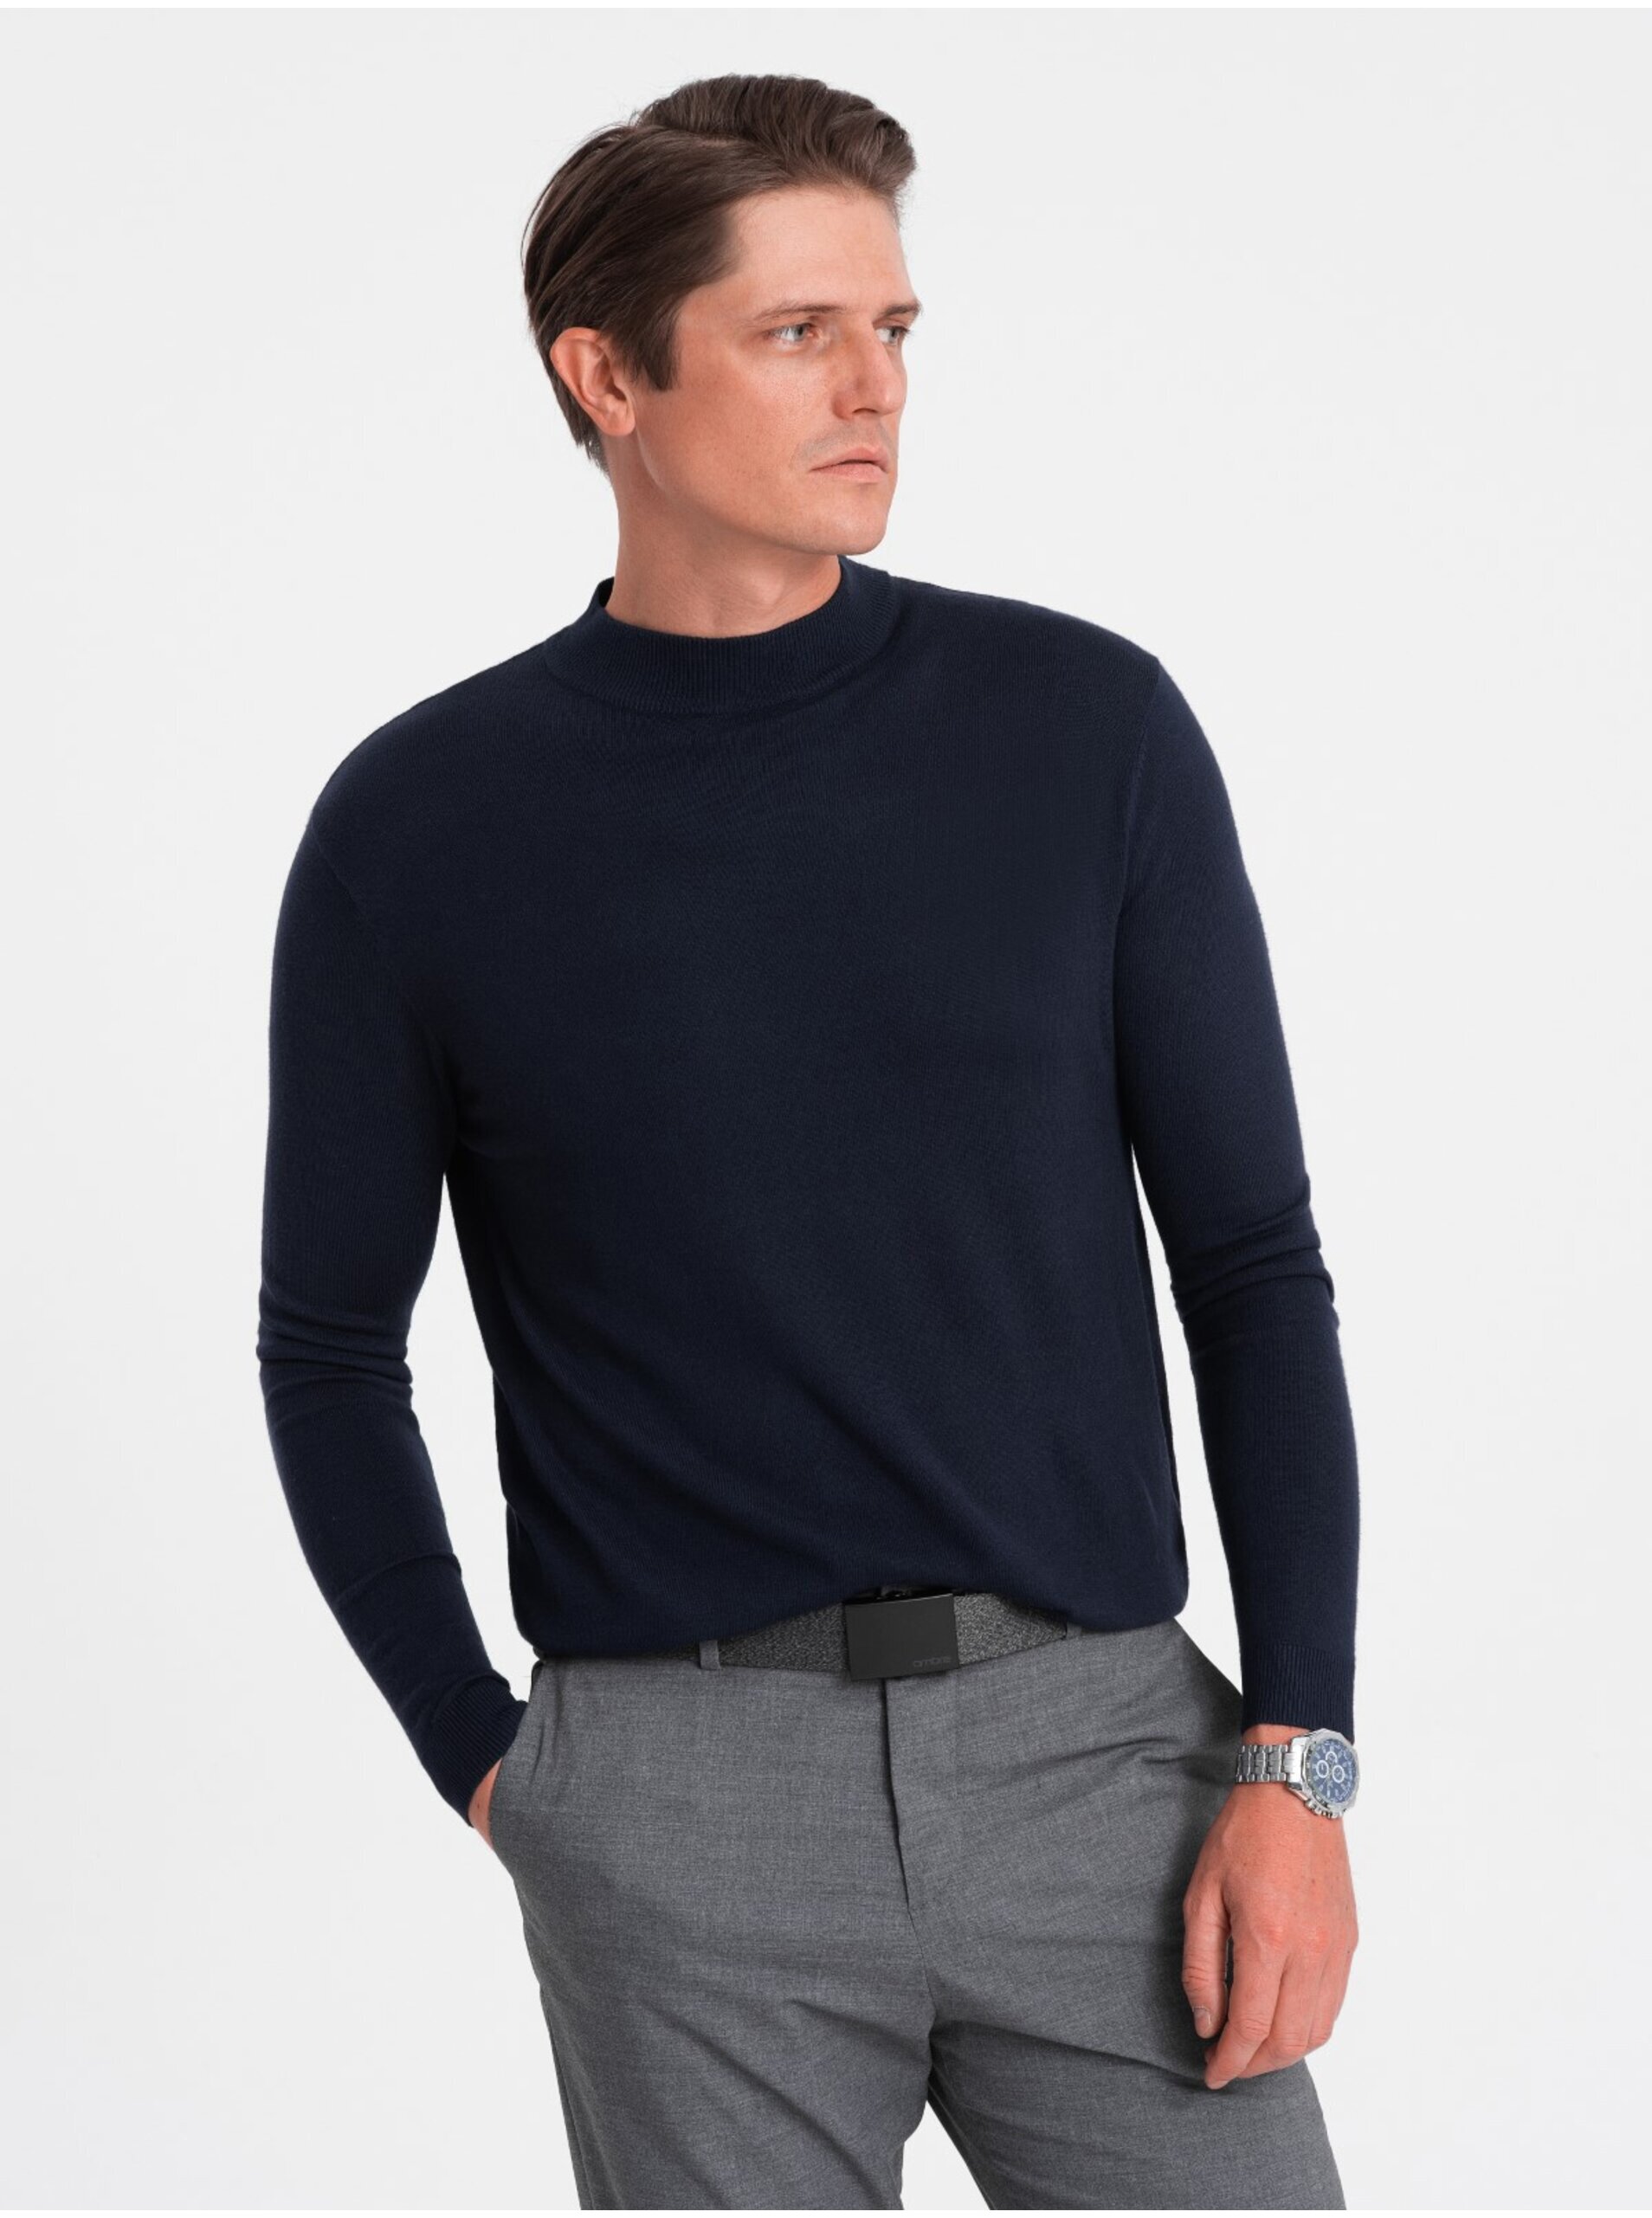 Lacno Tmavomodrý pánsky basic sveter so stojačikom Ombre Clothing